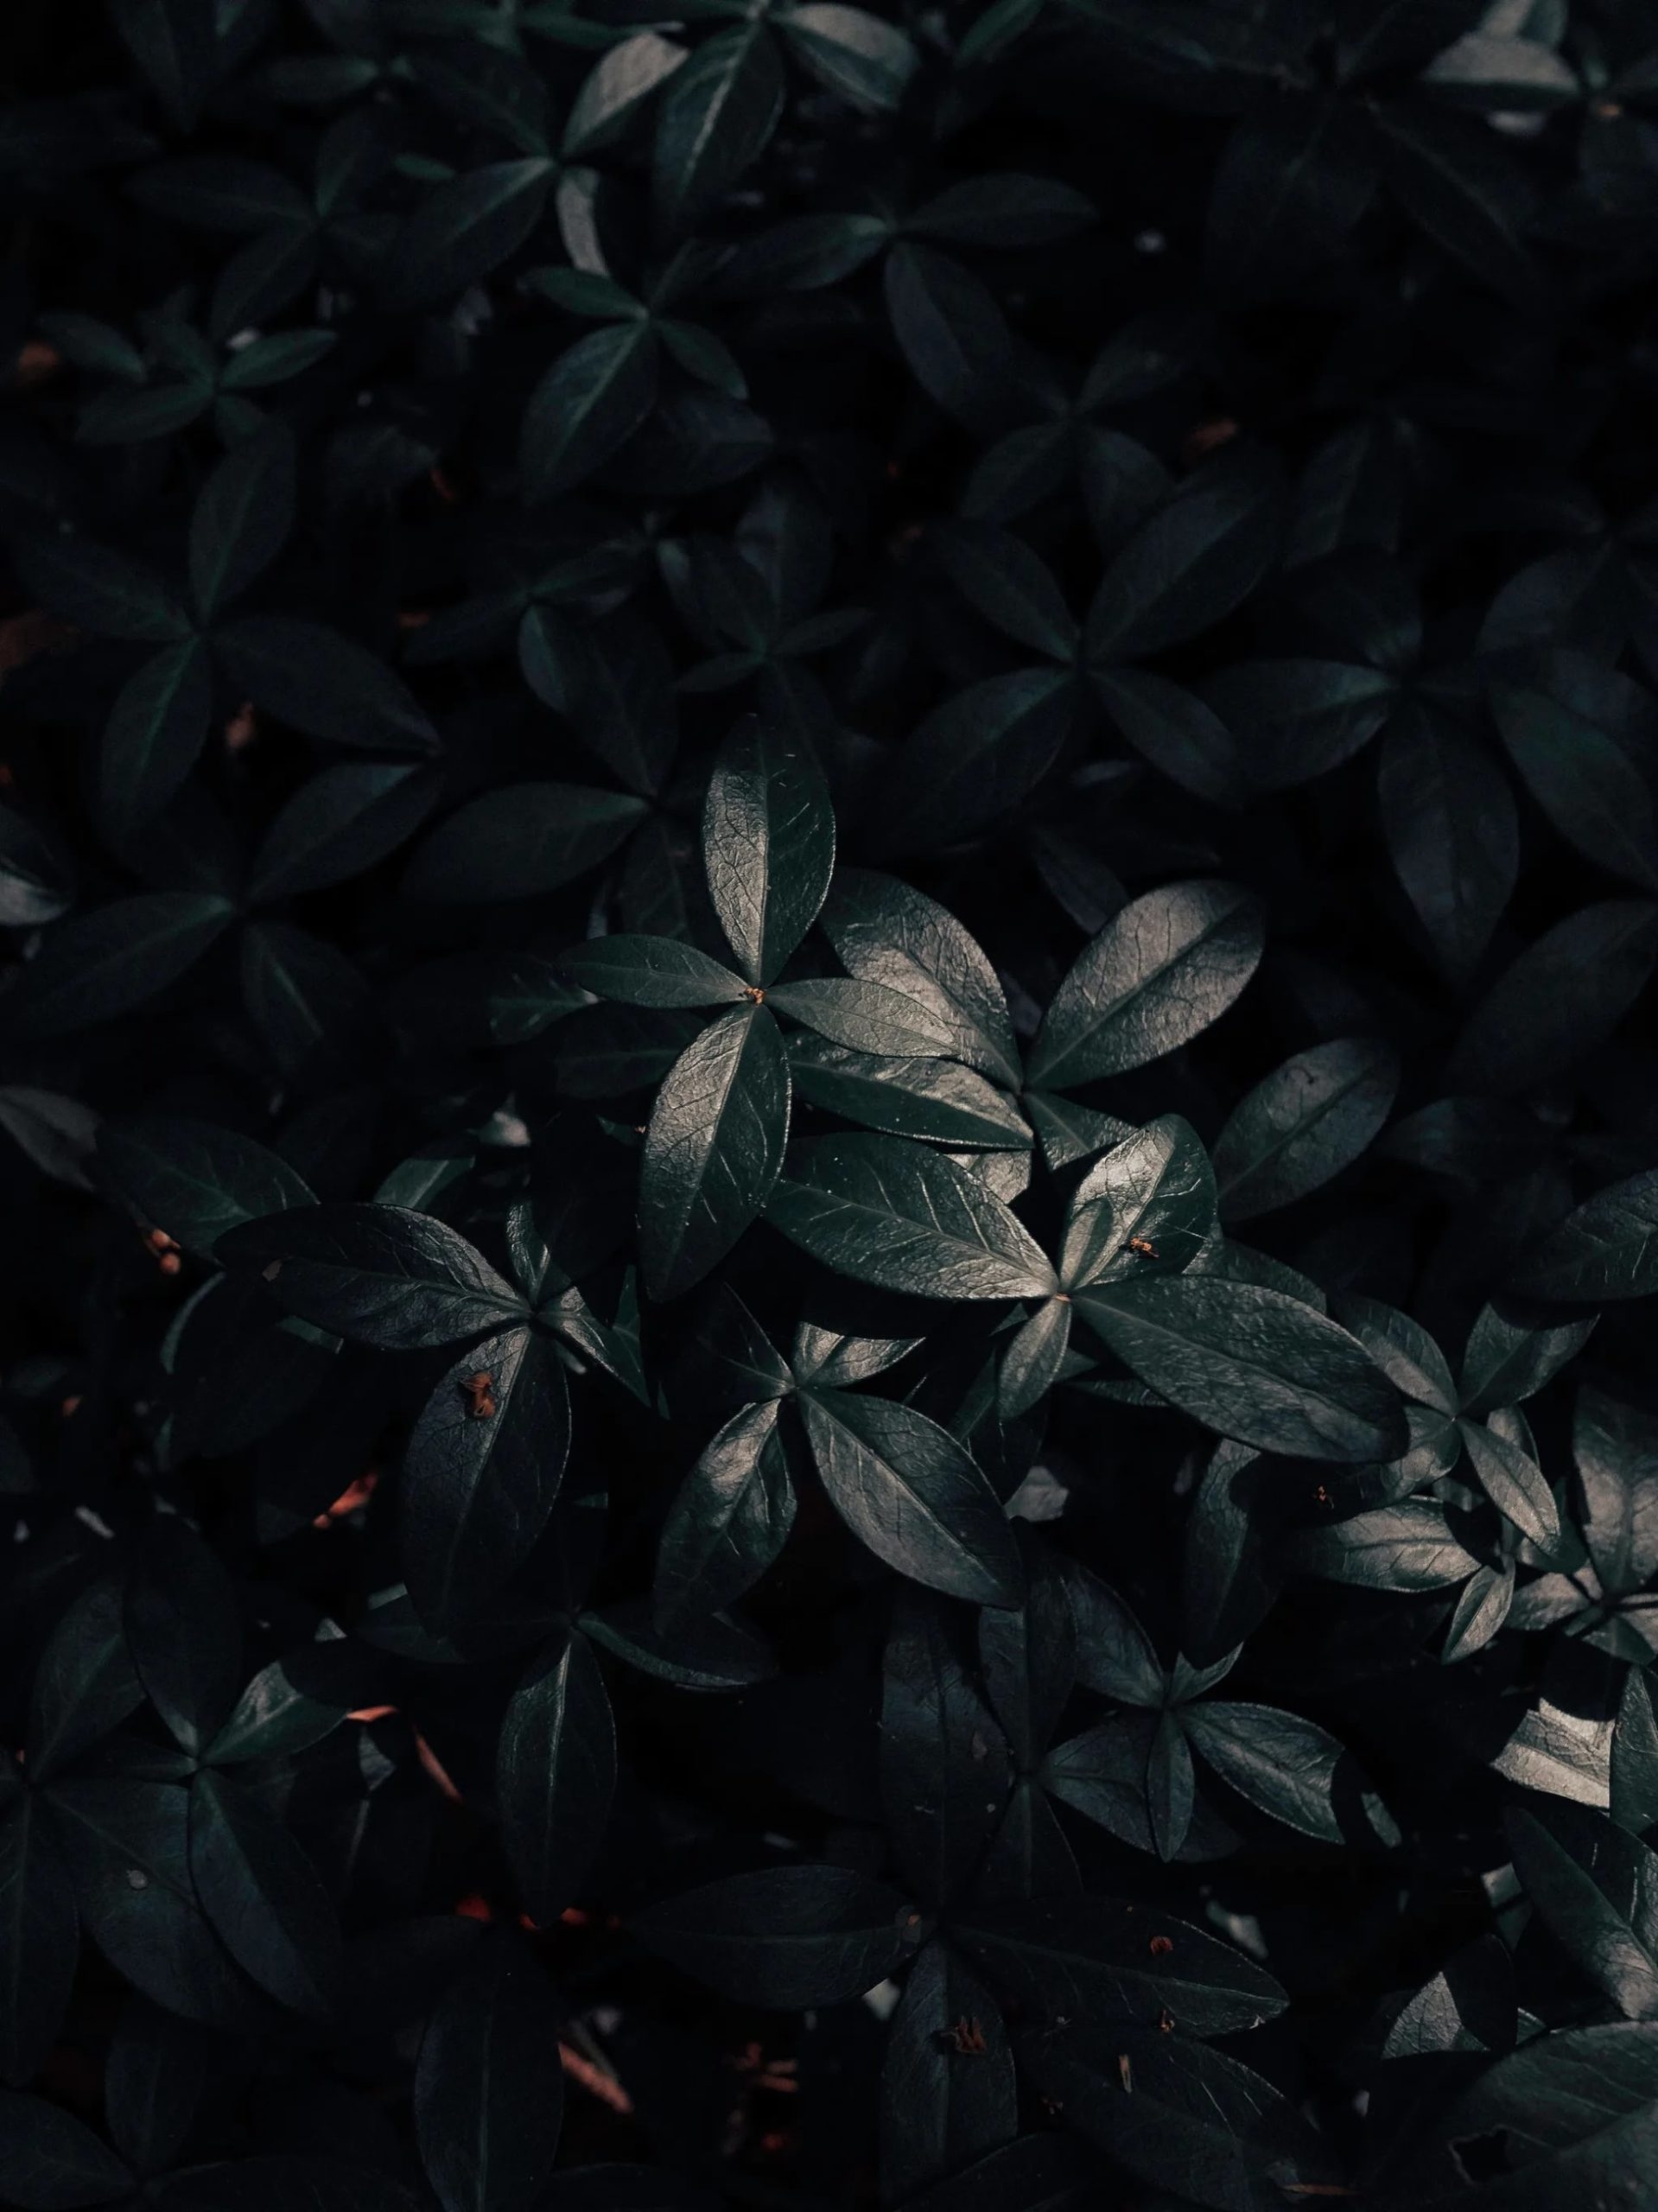 Картинка на телефон вертикальная темная. Темные листья. Темные обои. Темный фон. Красивые листья темные.